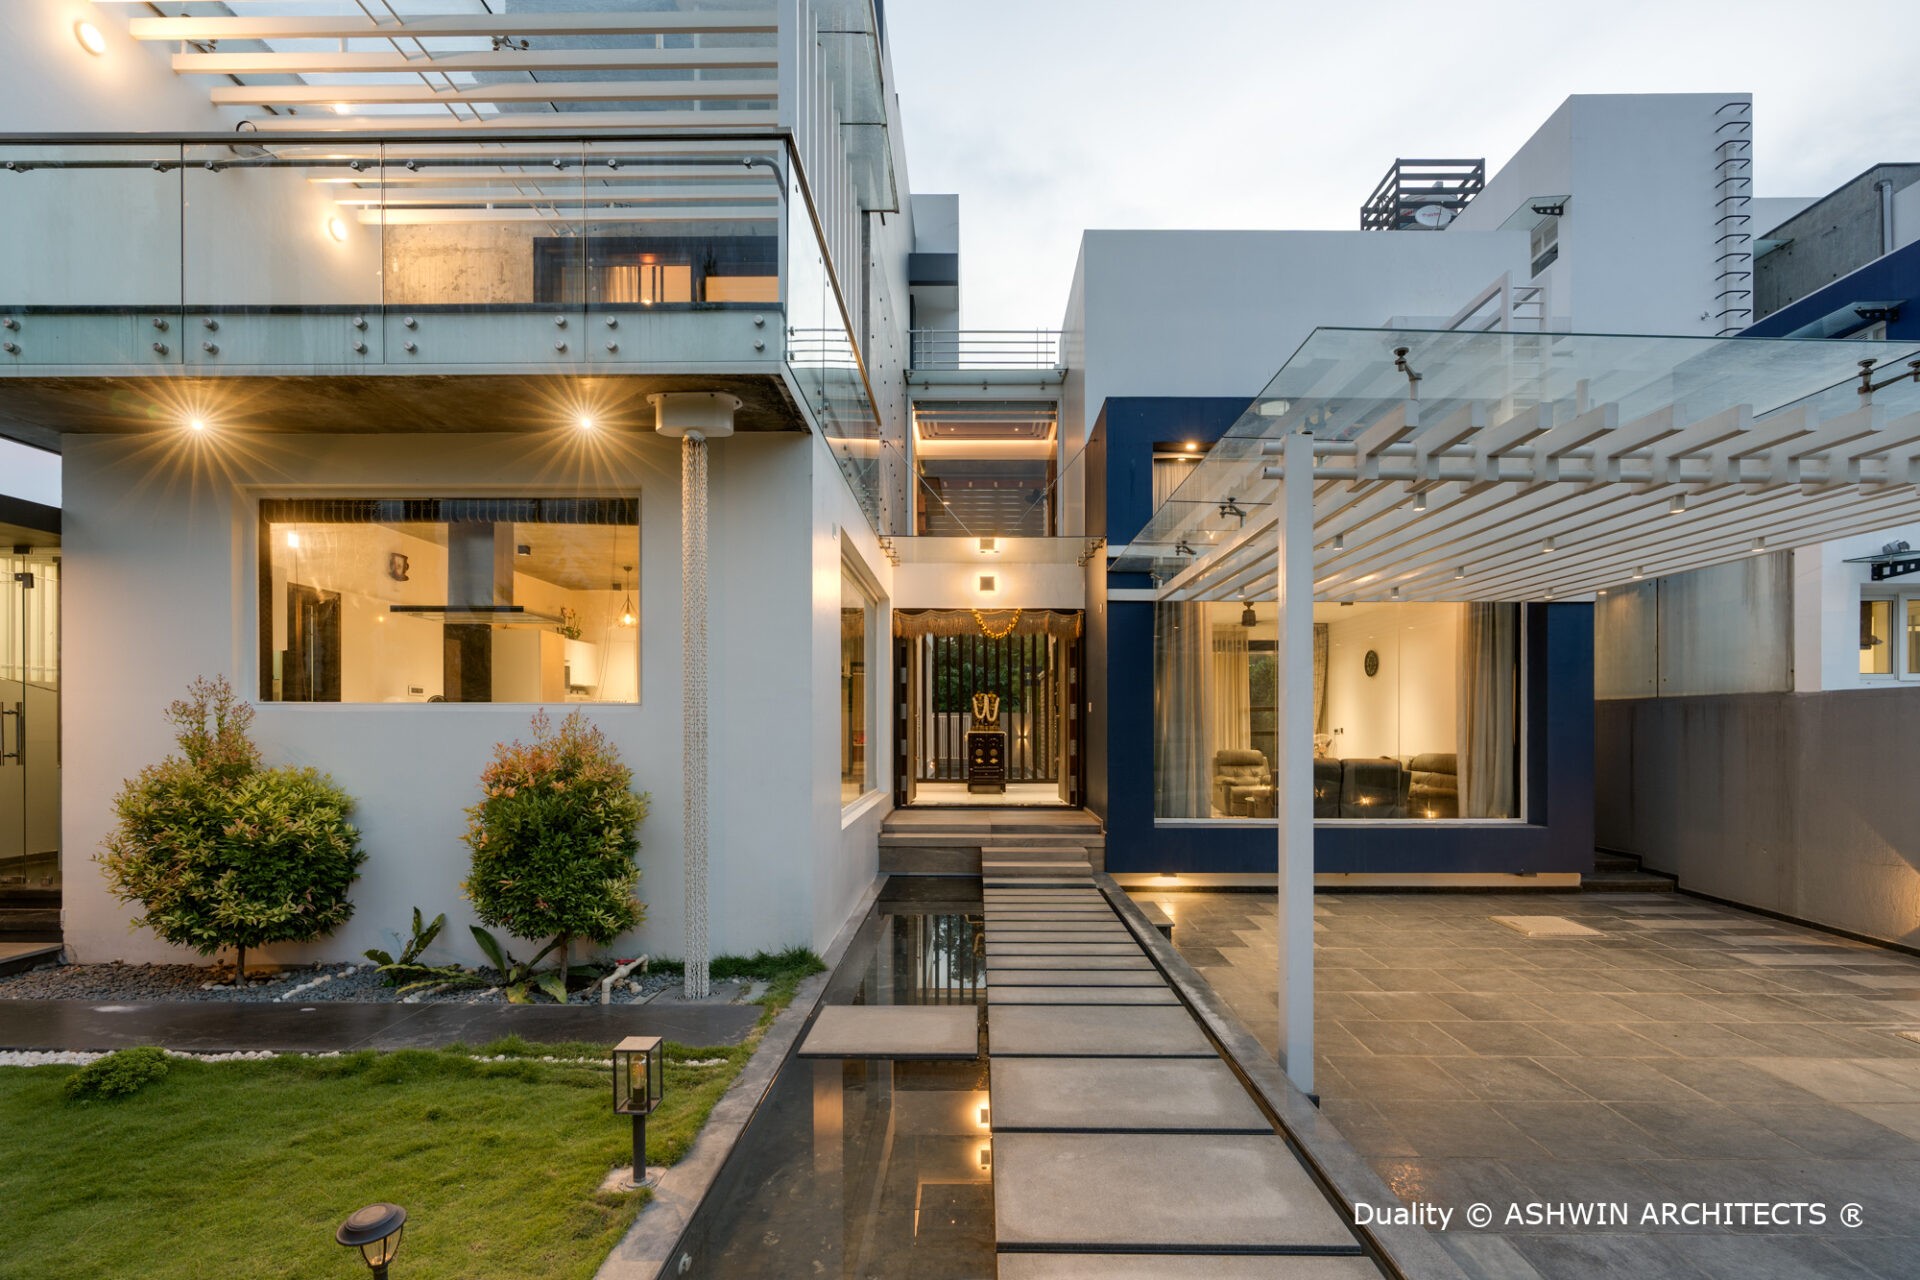 bangalore-architects-near-me-100x80-plot-duplex-house-design-front-view-eve-2